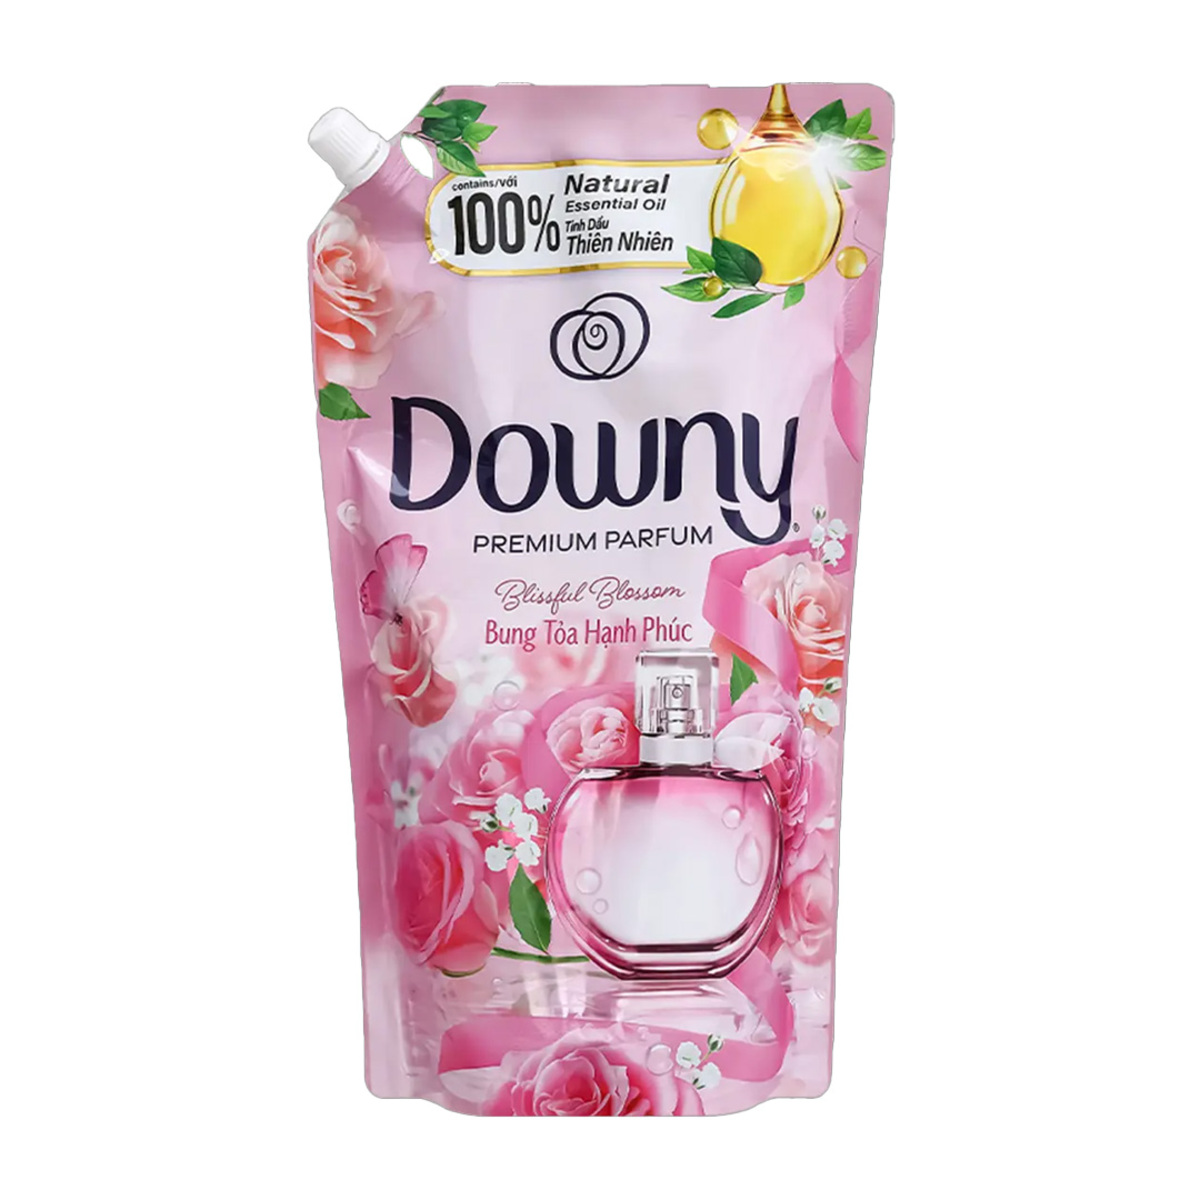 Downy Refill Blissfull Blossom 1.35Liter